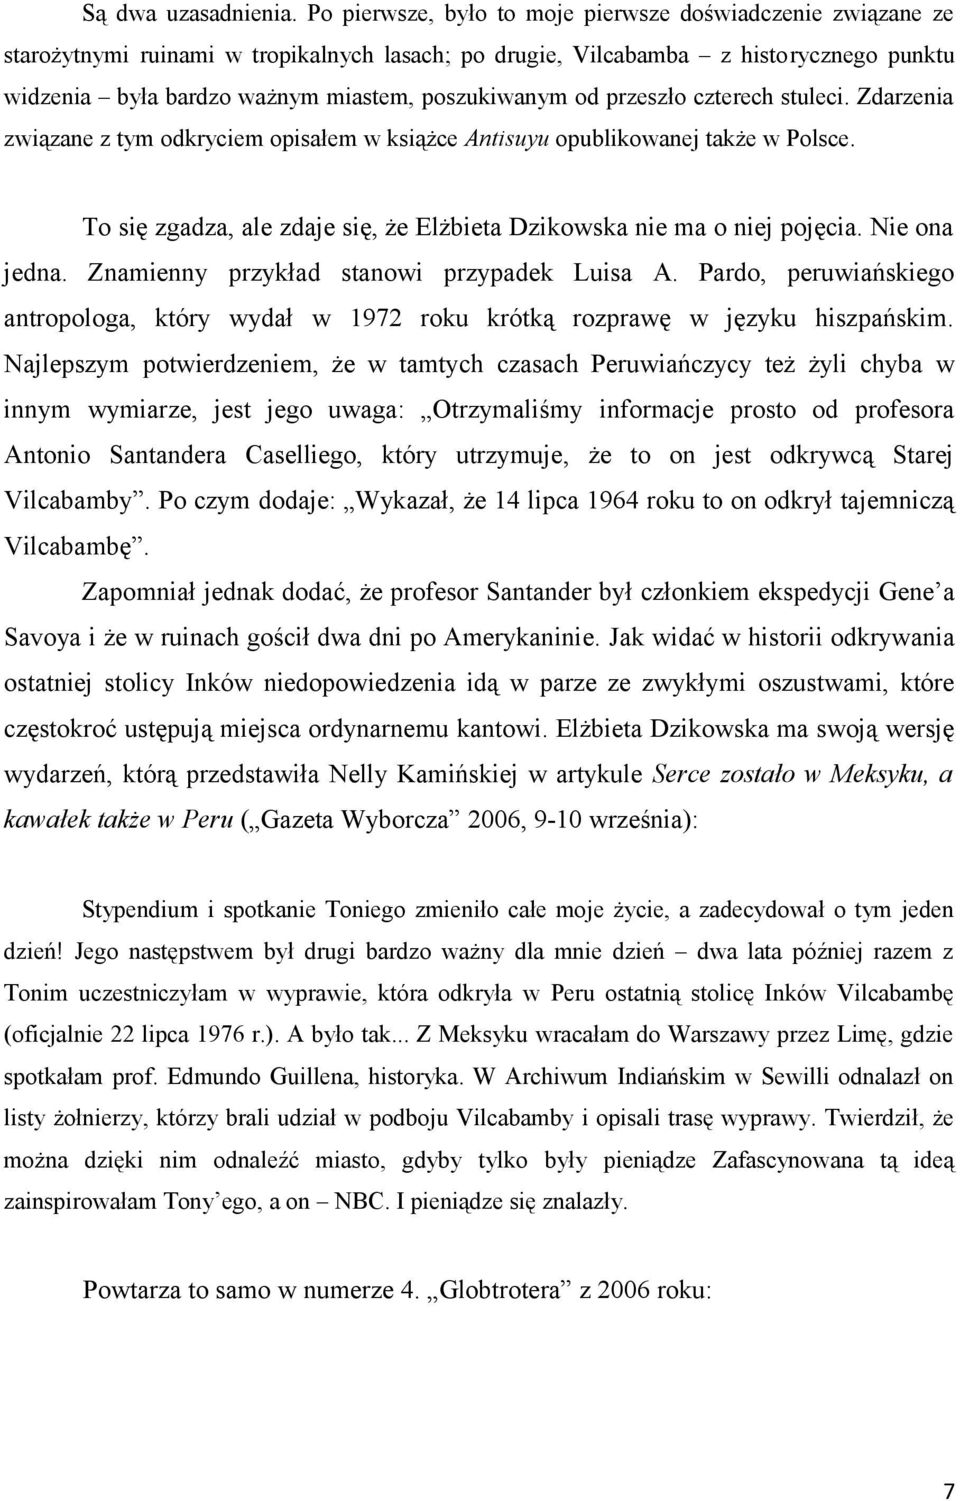 od przeszło czterech stuleci. Zdarzenia związane z tym odkryciem opisałem w książce Antisuyu opublikowanej także w Polsce. To się zgadza, ale zdaje się, że Elżbieta Dzikowska nie ma o niej pojęcia.